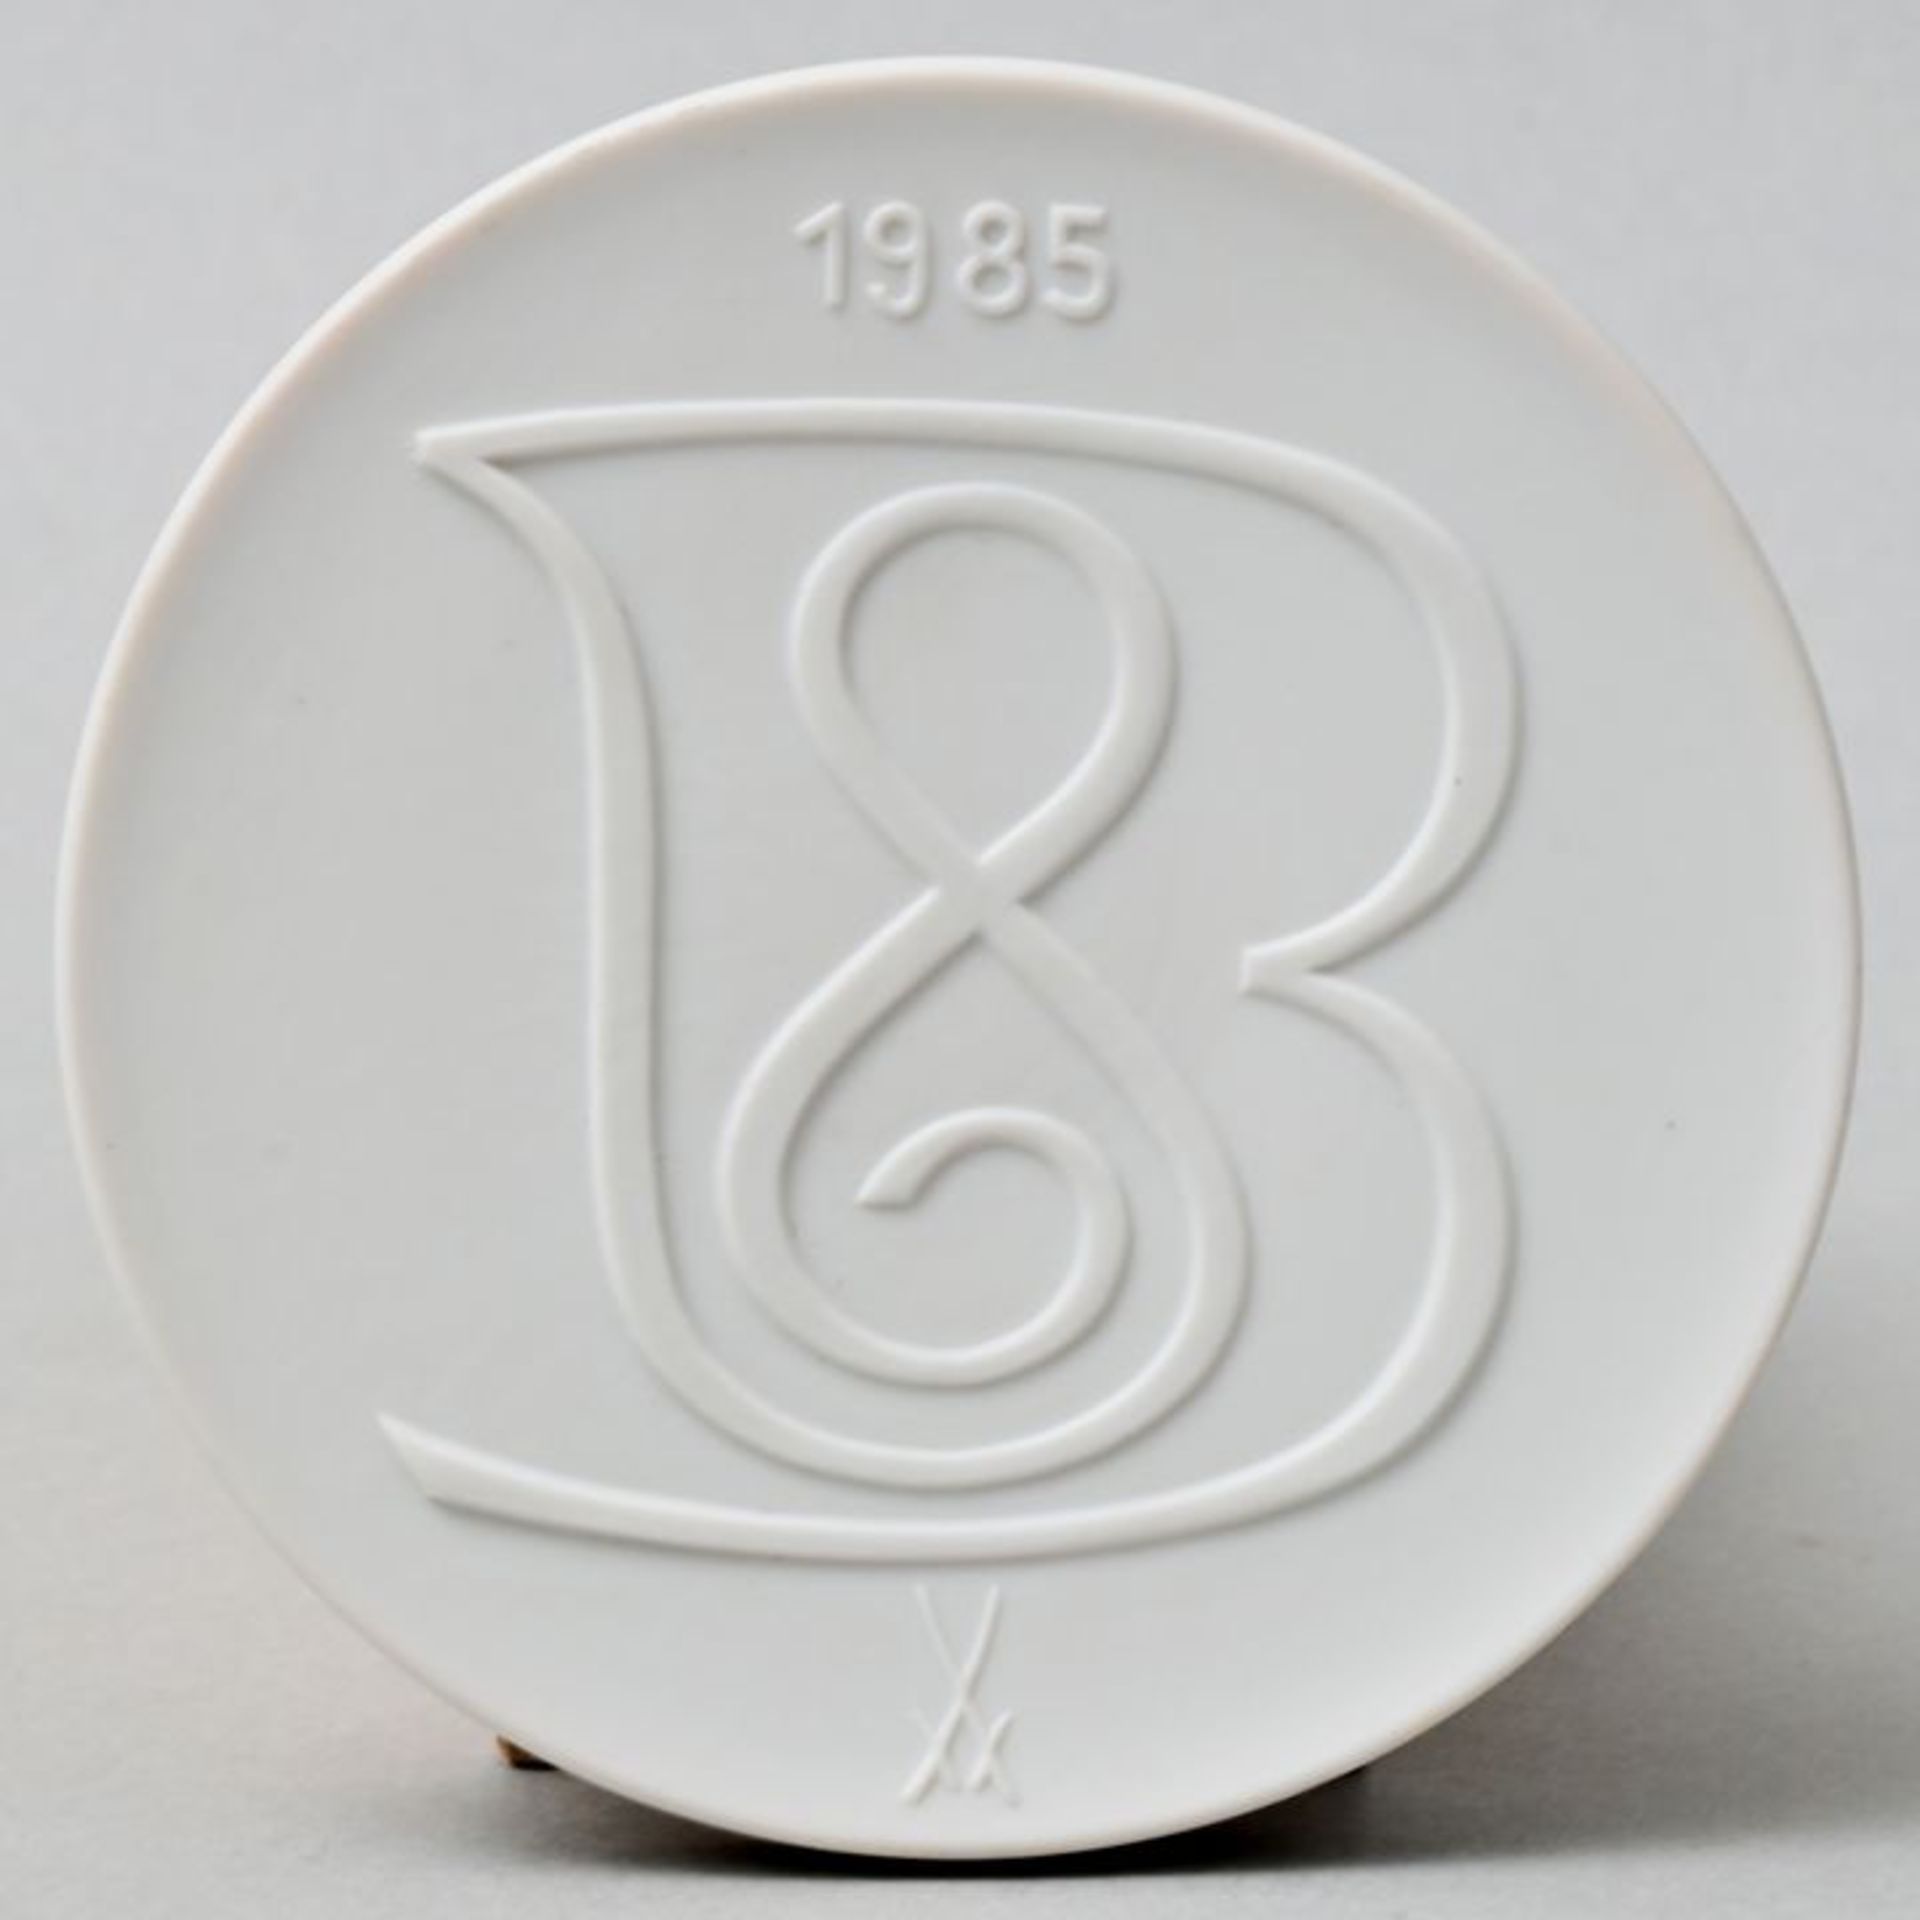 Bach-Plakette/ porcelain plaque - Image 2 of 3